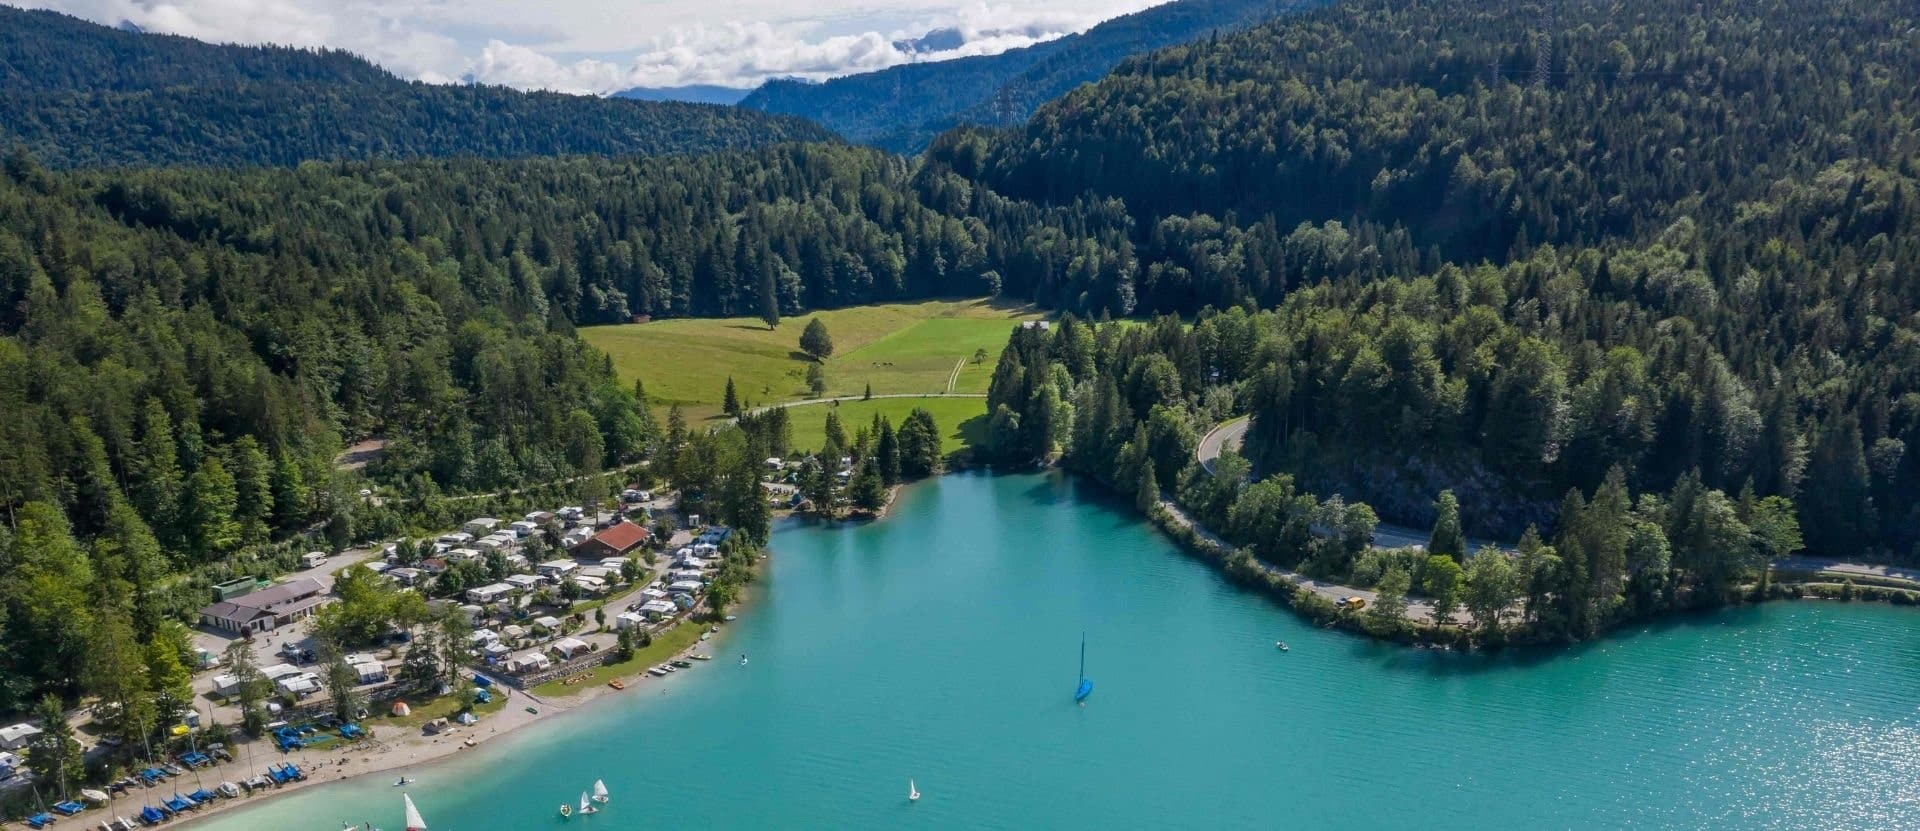 Blick auf einen schönen blauen See, umgeben von Wald und Bergen. Campingplatz in Deutschland an einem See und bewaldeten Hügeln - Campingplätze in Deutschland